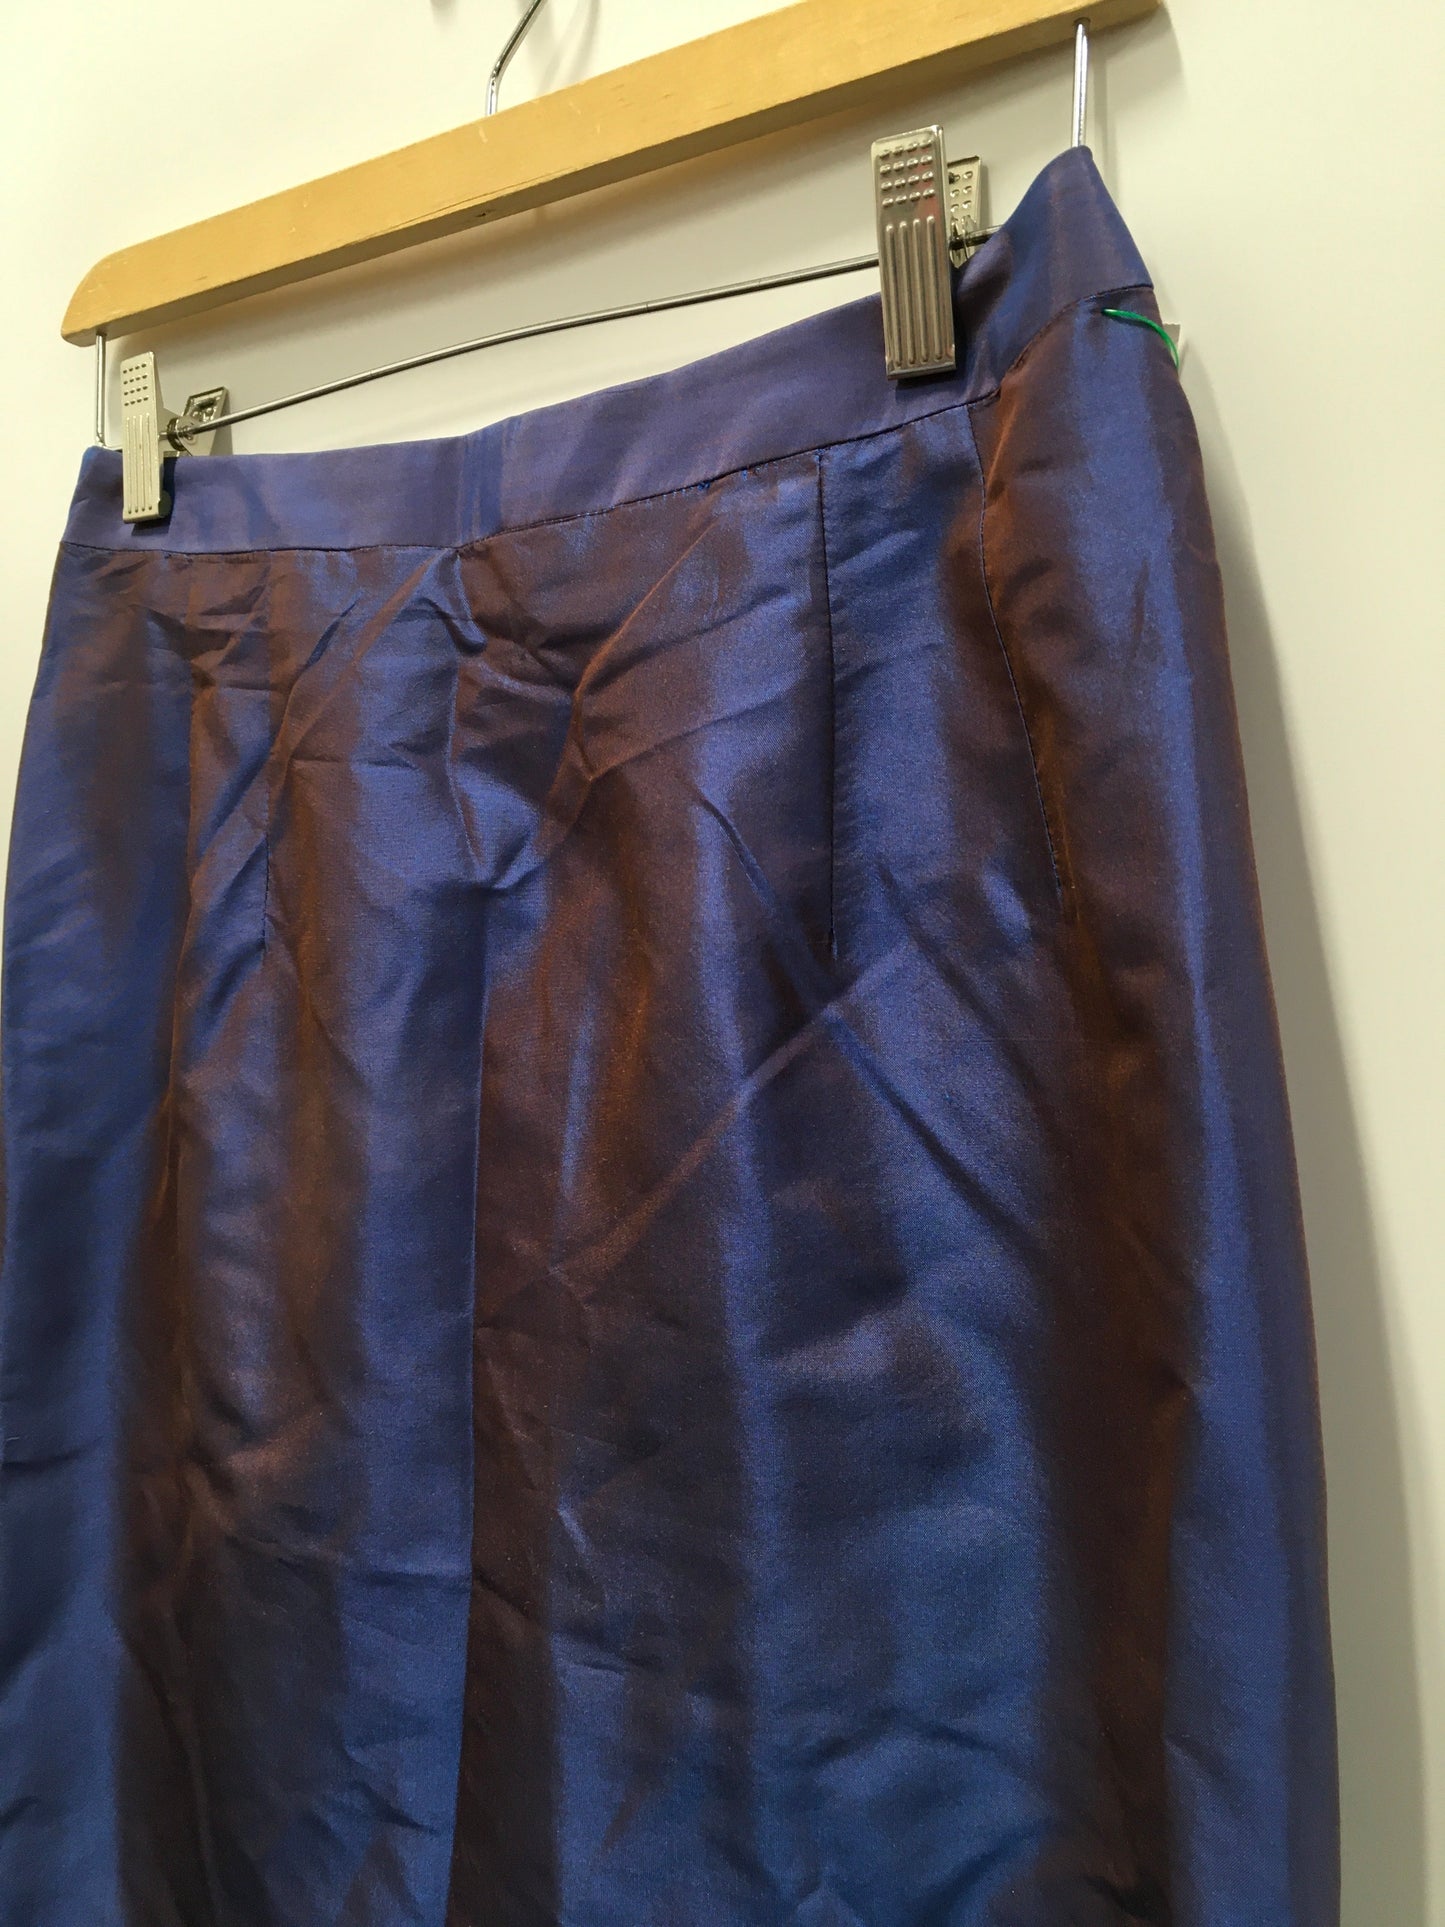 Skirt Midi By Marisa Baratelli  Size: 10